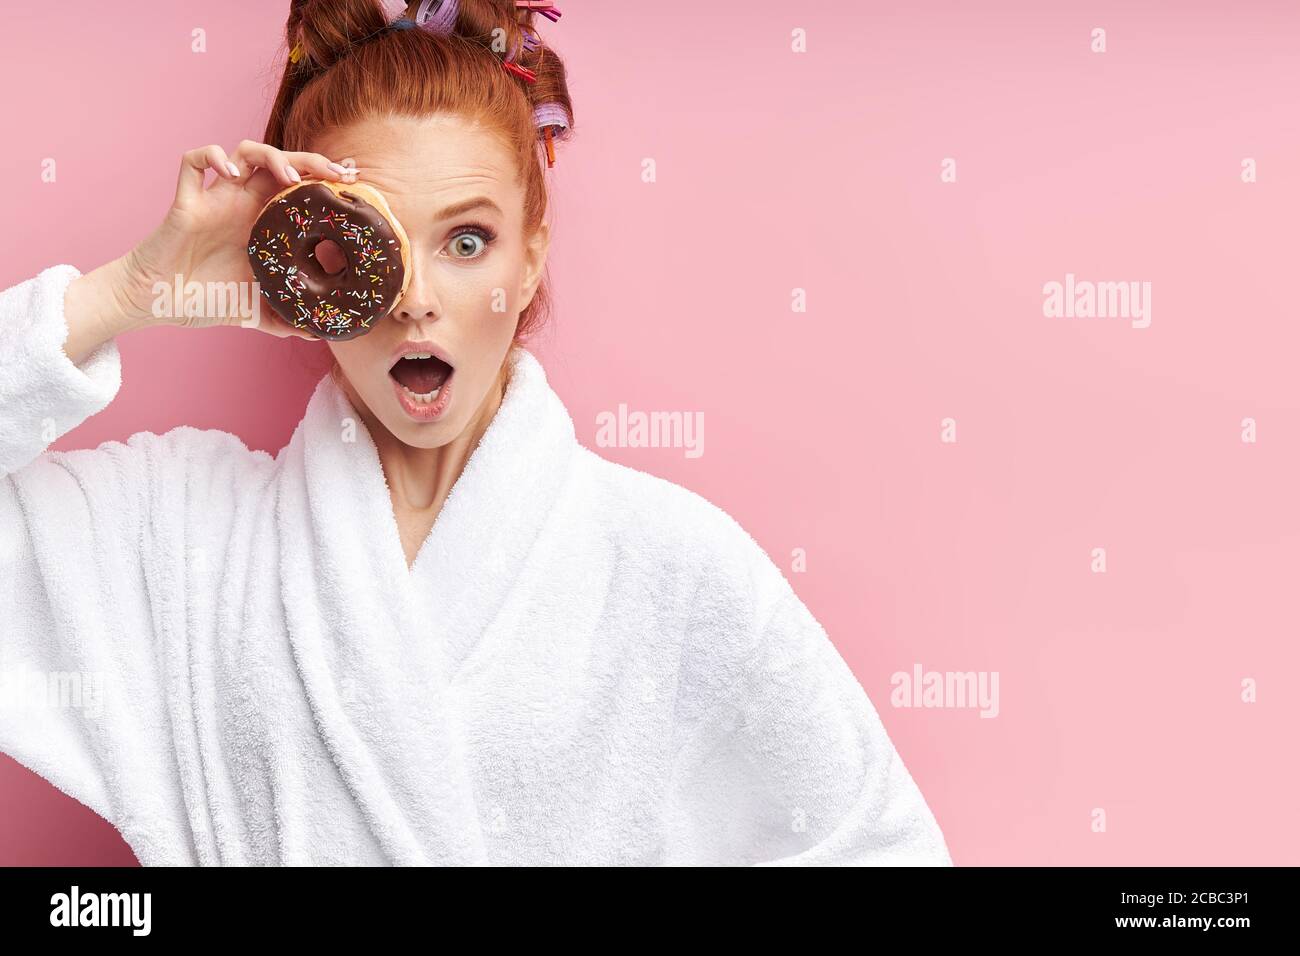 Mädchen nach der Dusche in Bademantel angezogen ist überrascht, geschlossen  rechtes Auge mit süßen braunen Donut. Isoliert auf rosa Hintergrund  Stockfotografie - Alamy